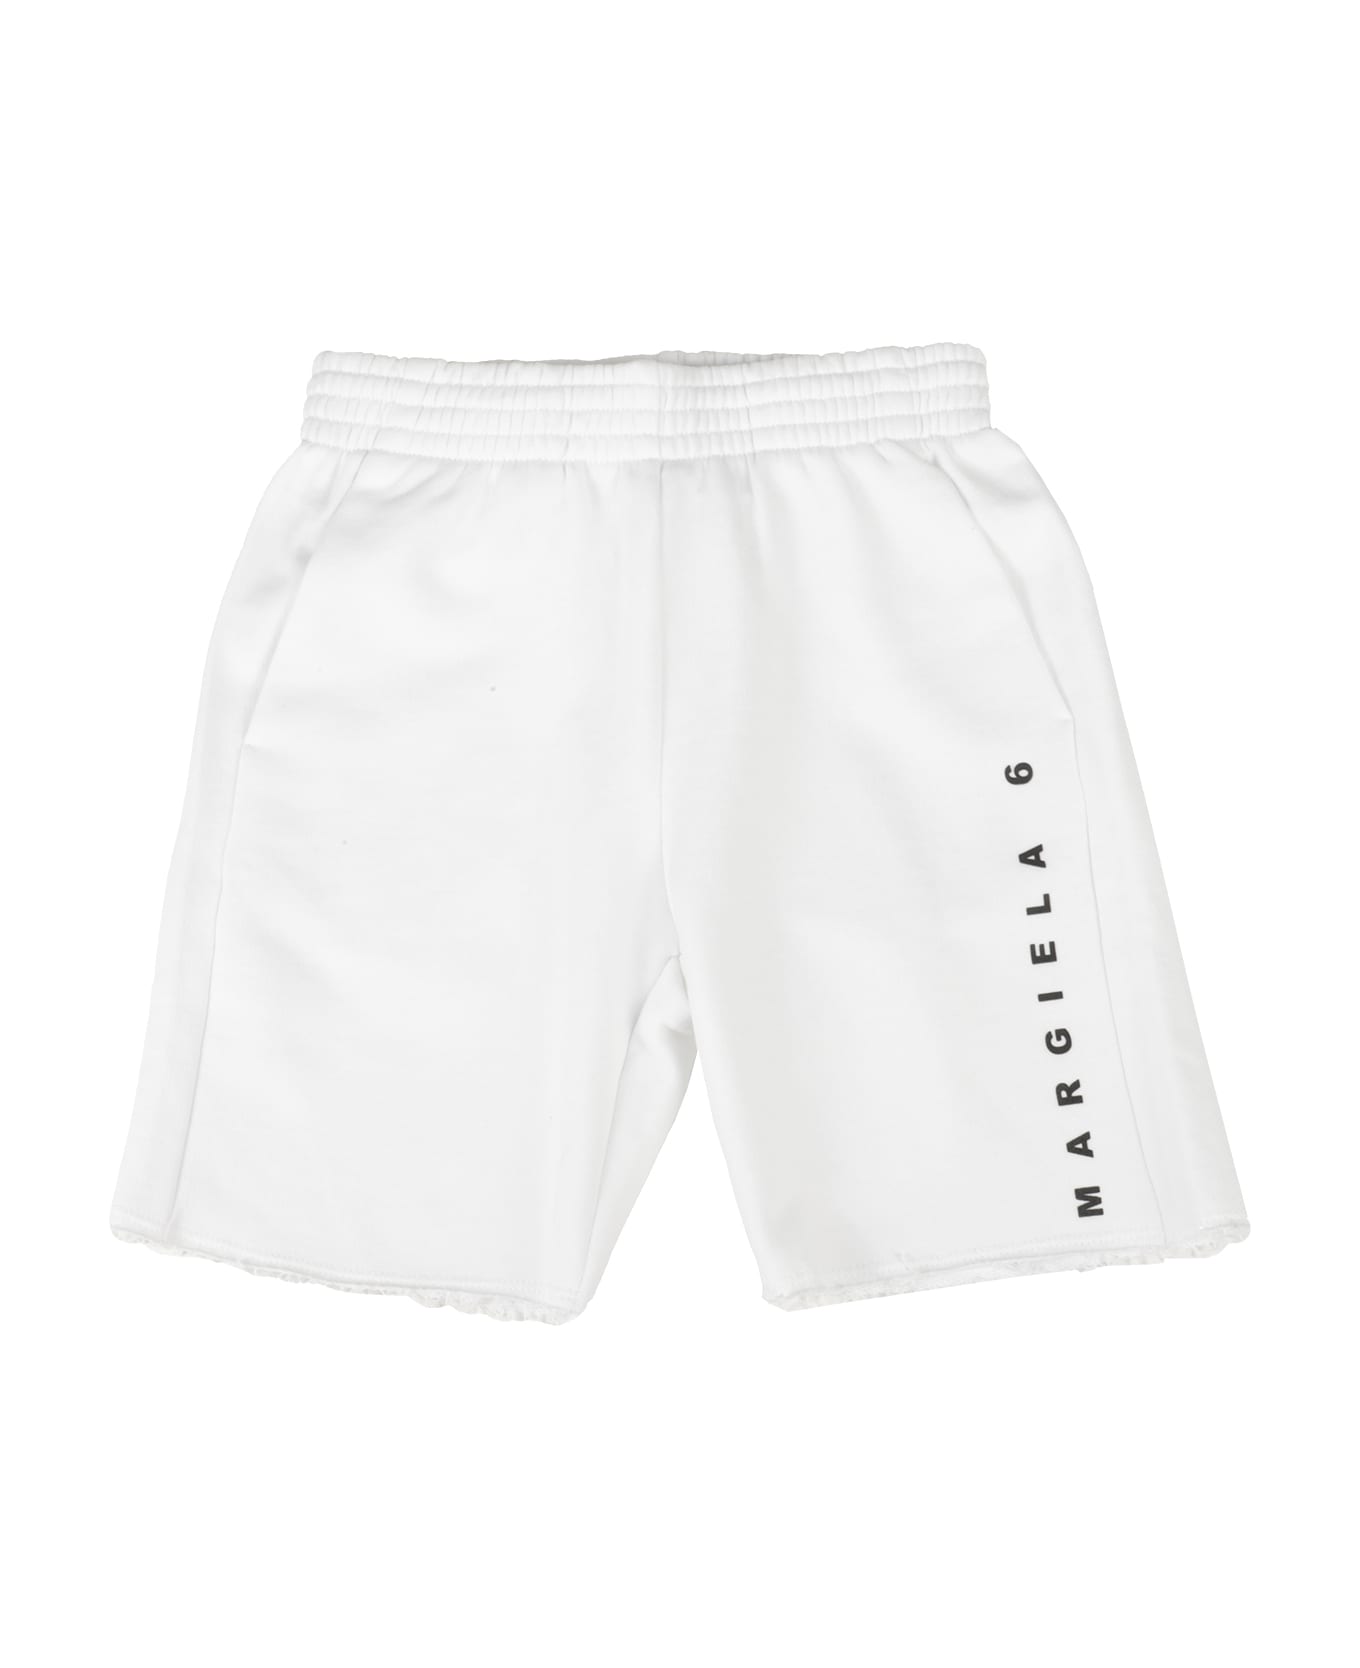 MM6 Maison Margiela Shorts - Bianco ボトムス